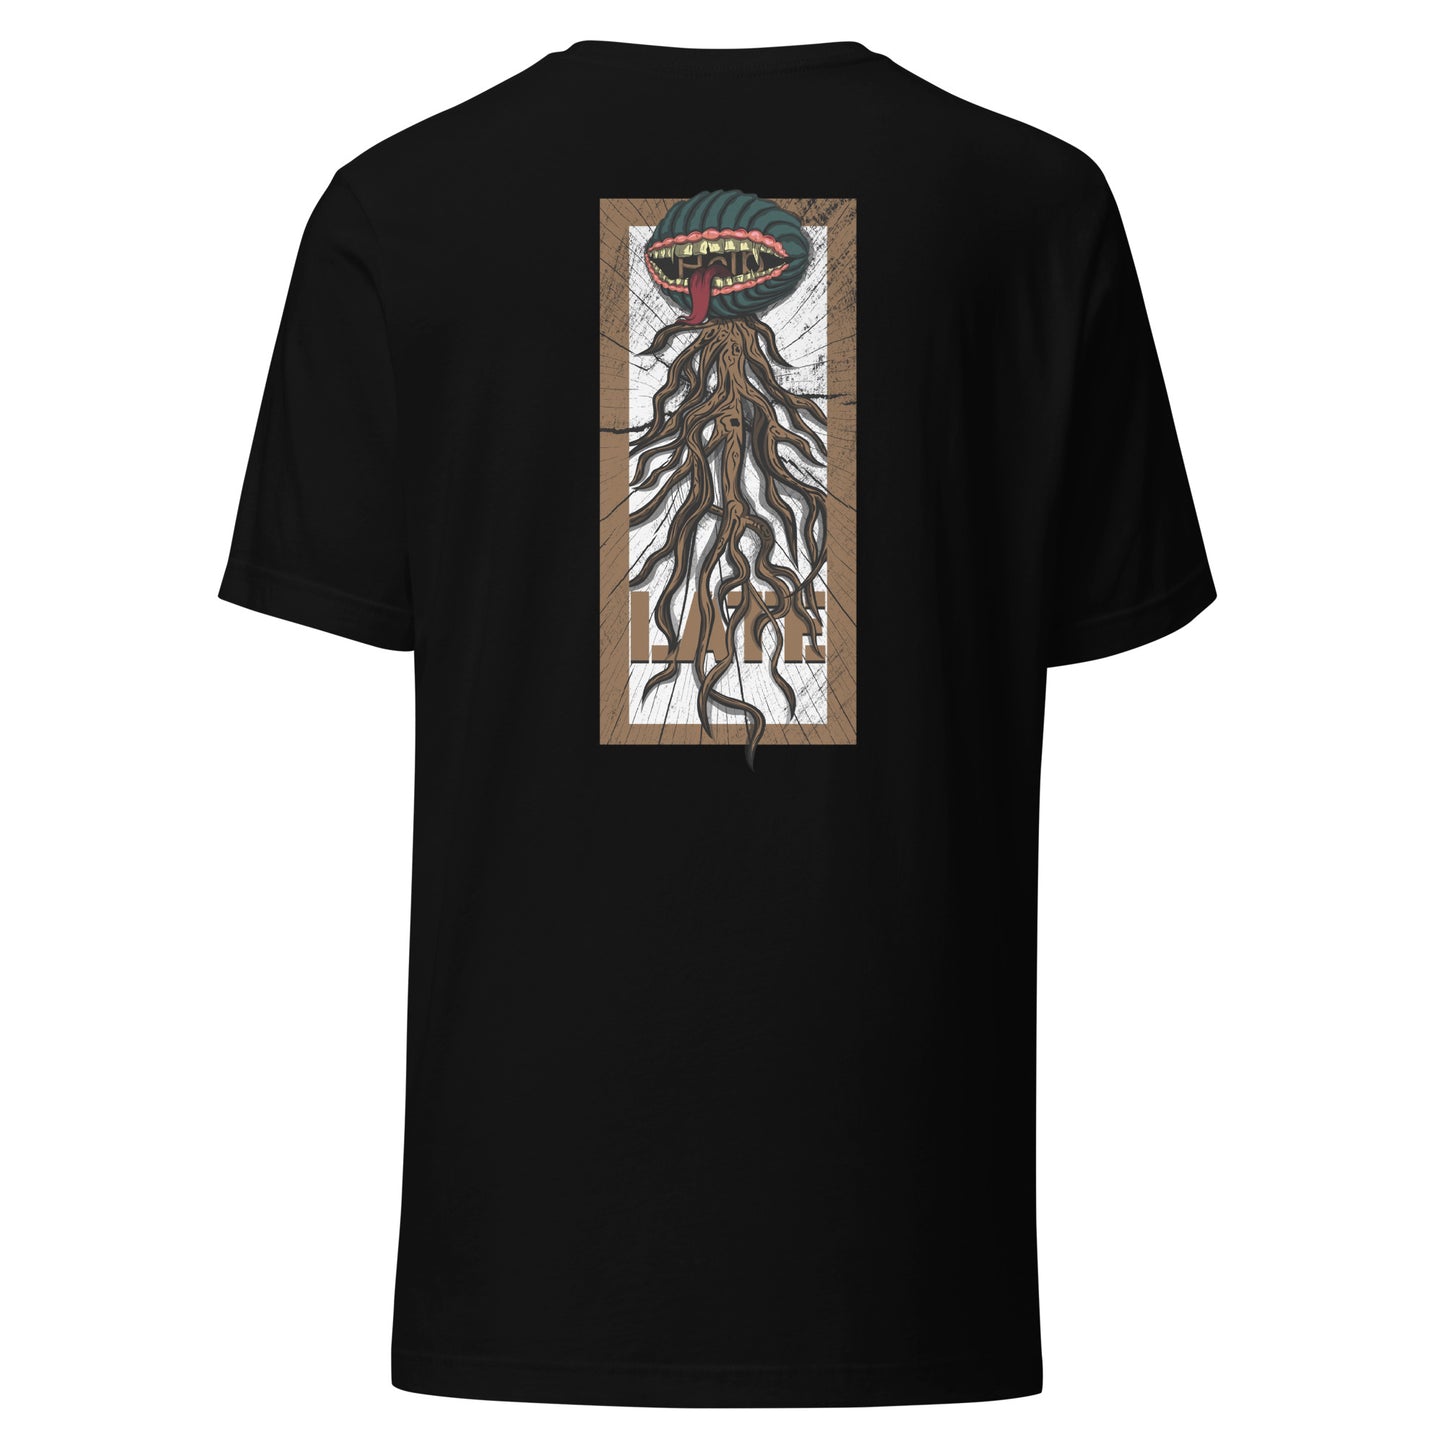 T-shirt style santacruz skateboarding plante carnivore effet bois tshirt unisex dos couleur noir